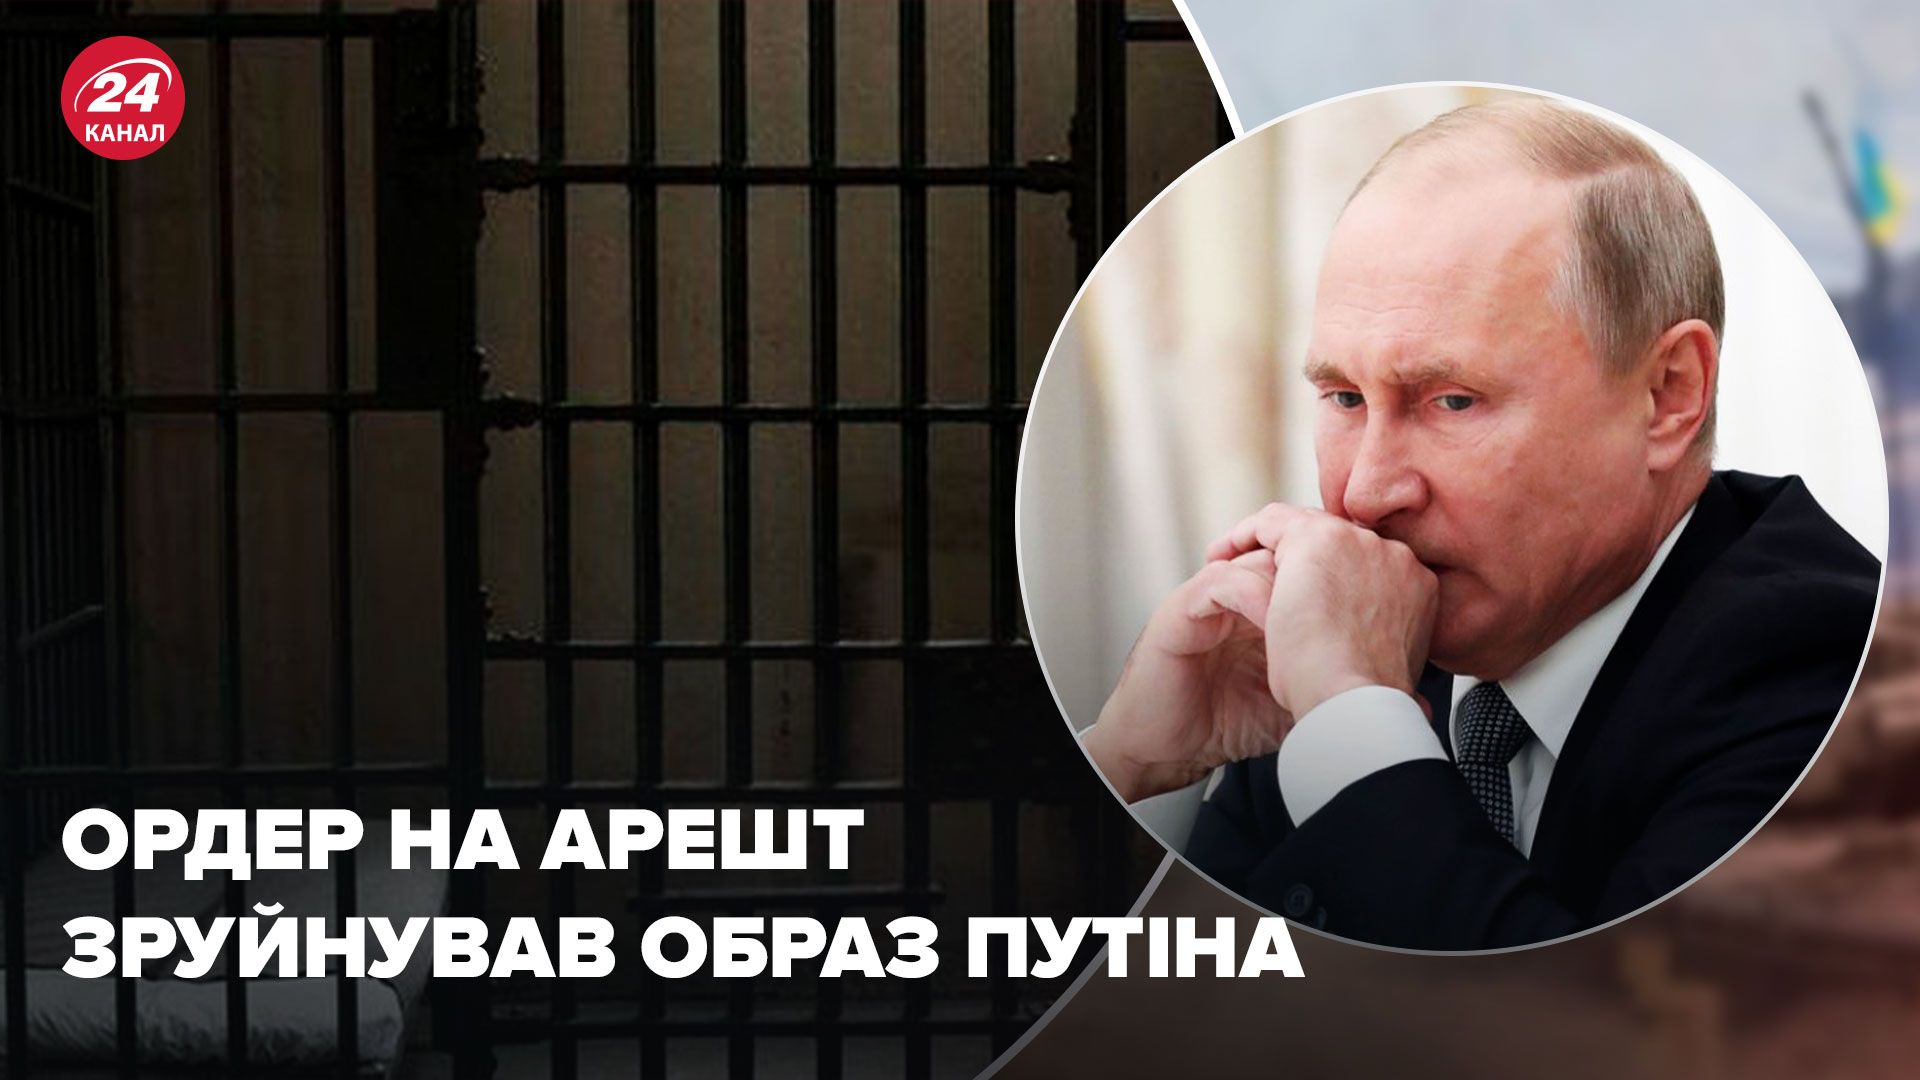 Путин Гаага - как ордер на арест повлиял на Путина и режим - 24 Канал